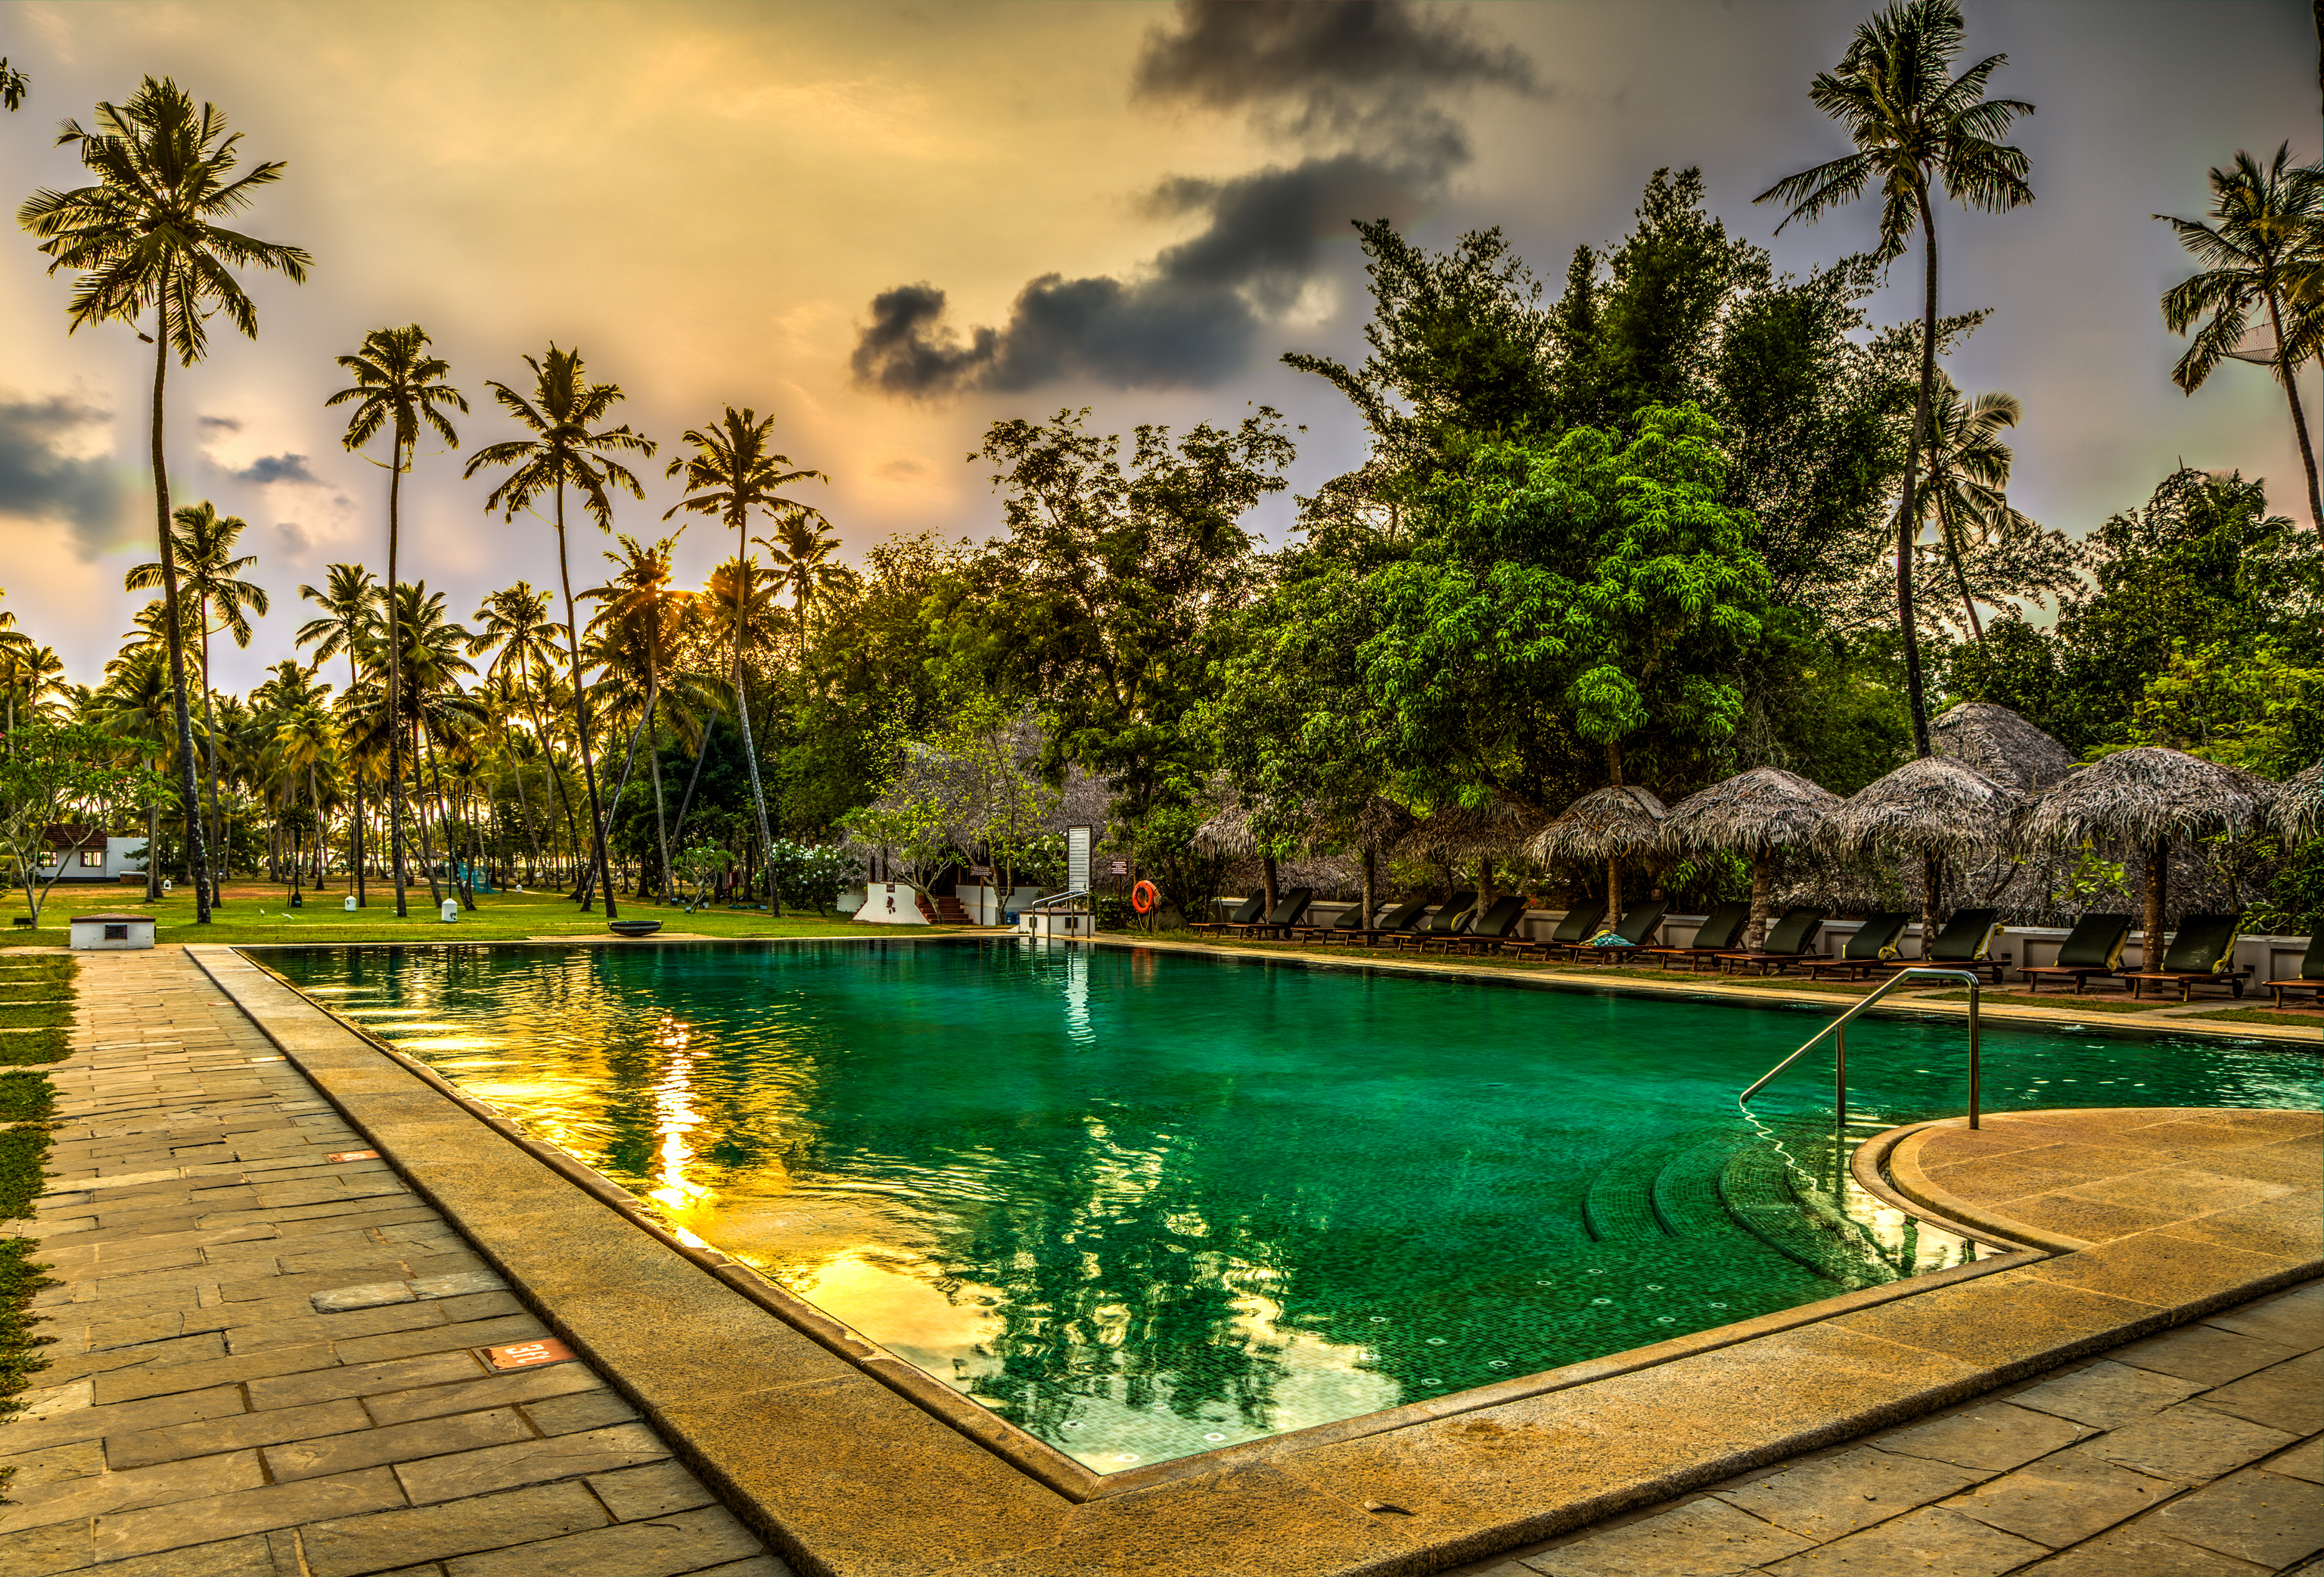 La piscina de agua marina, icono de este hotel en Kerala.